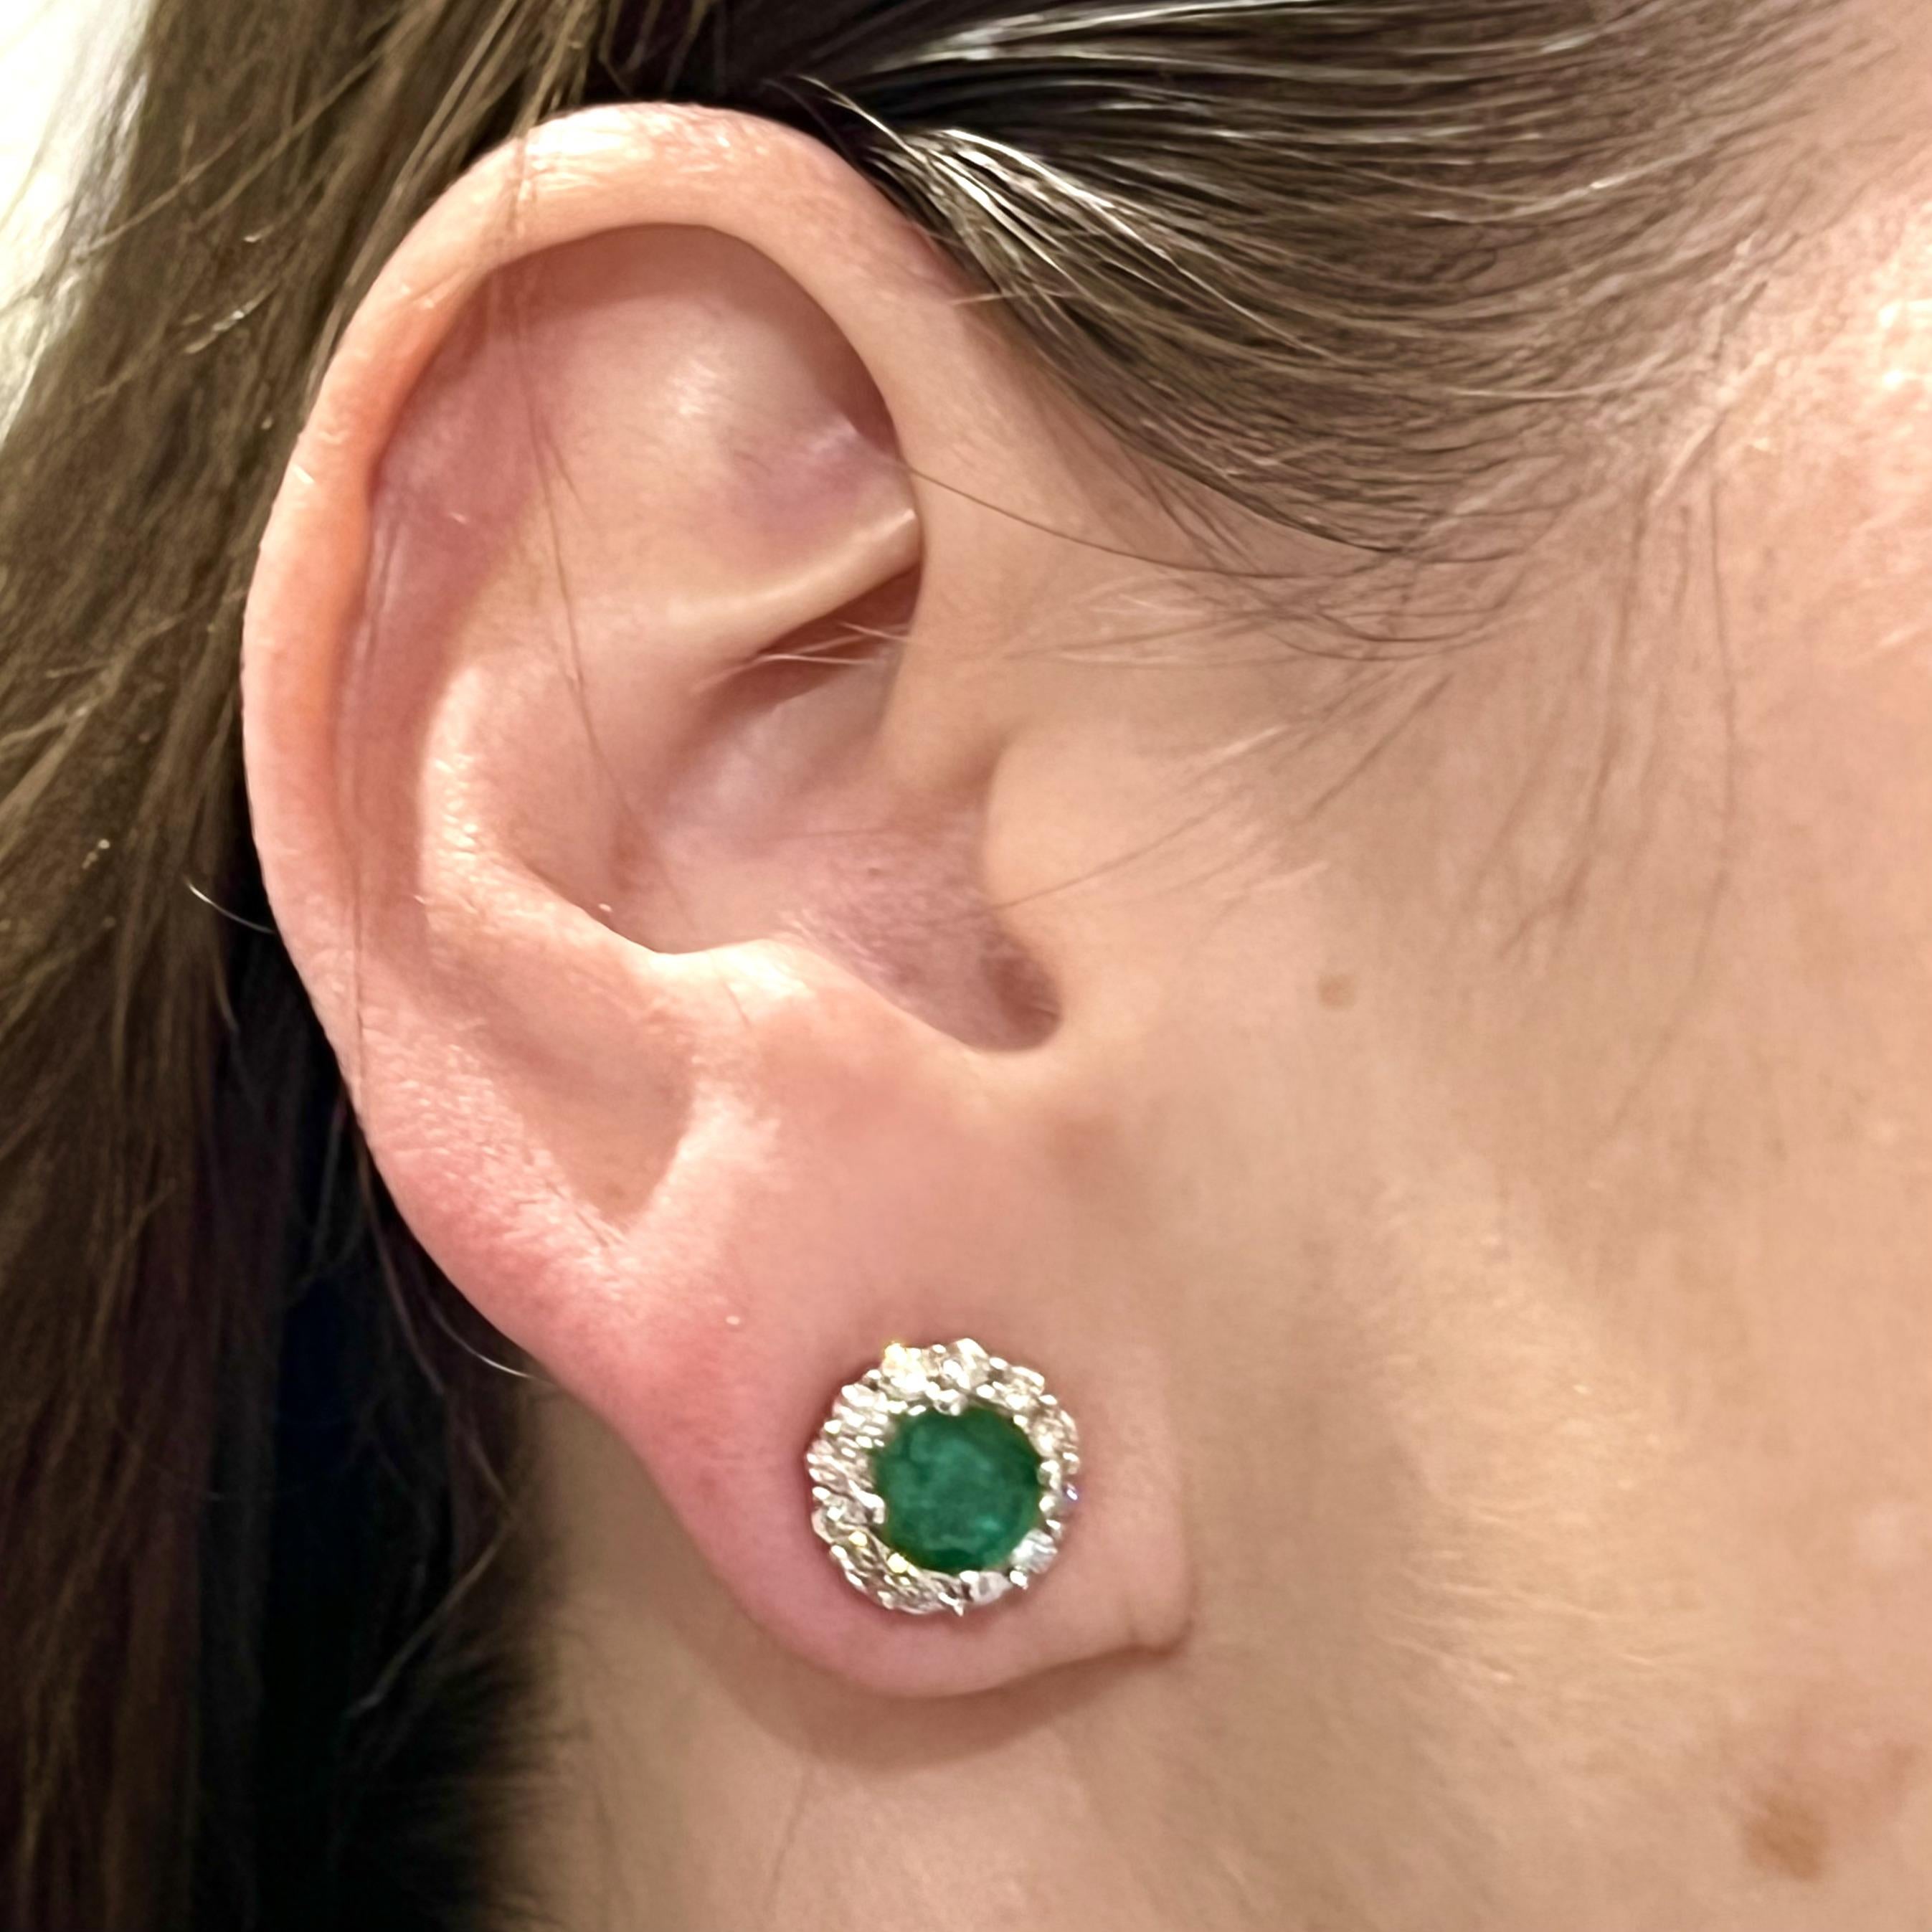 Natürlicher Smaragd Diamant-Ohrringe 14k Gold 3,02 TCW zertifiziert $5,490 211182

Dies ist ein einzigartiges, maßgeschneidertes, glamouröses Schmuckstück!

Nichts sagt mehr 